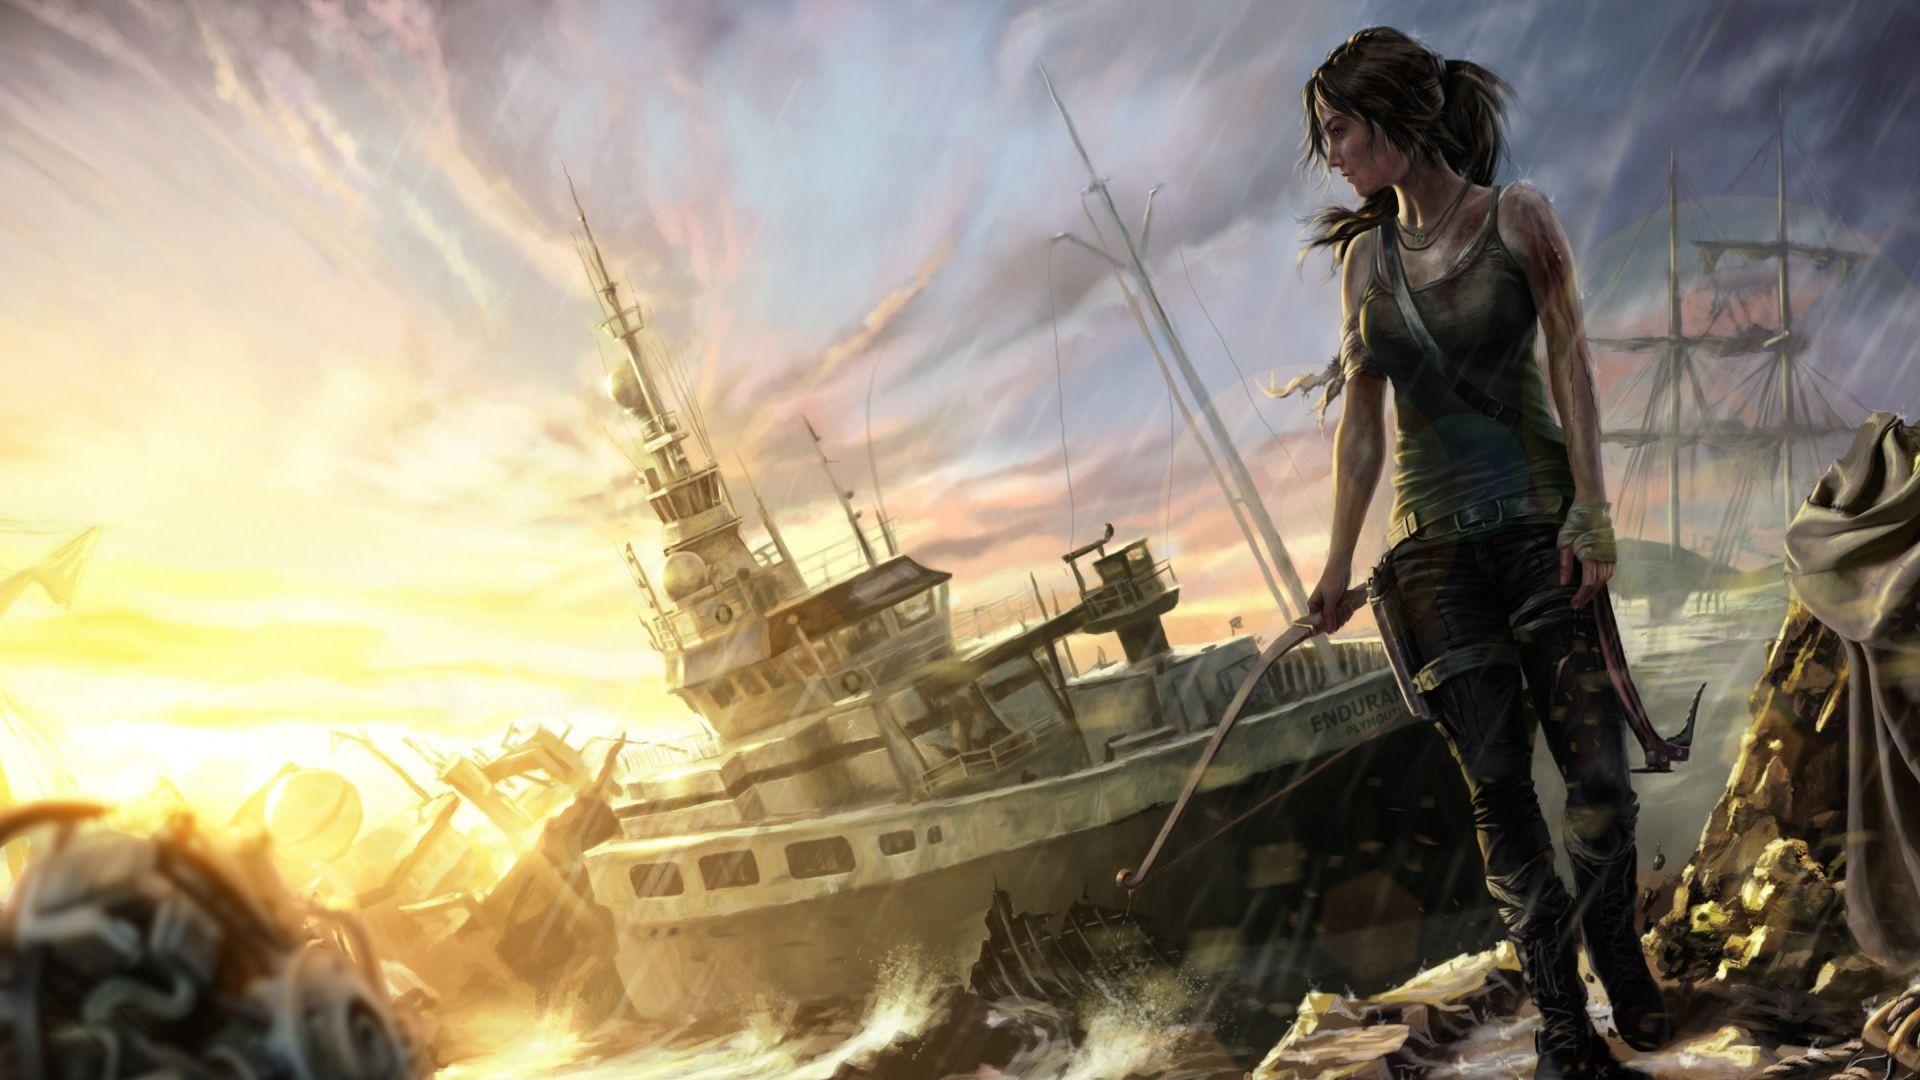 In Gallery: Lara Croft Wallpaper, 42 Lara Croft HD Wallpaper